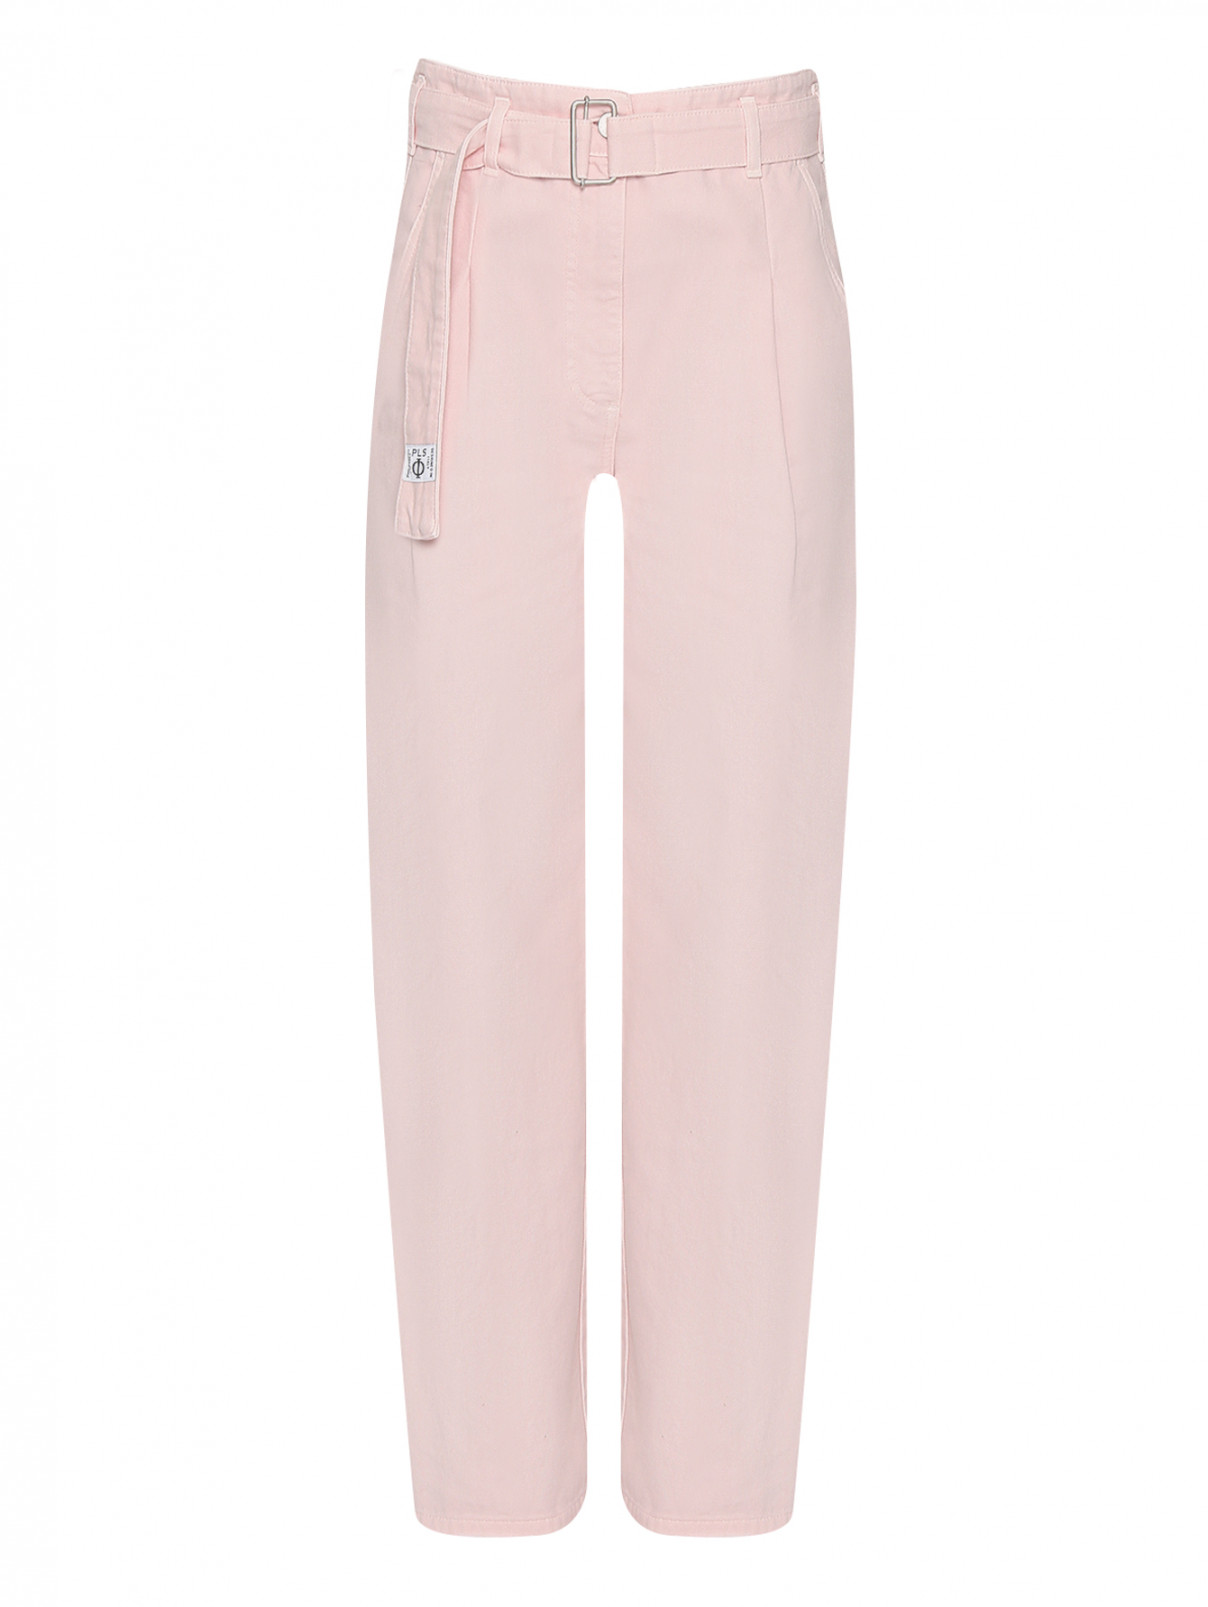 Широкие брюки из хлопка с поясом Philosophy di Lorenzo Serafini  –  Общий вид  – Цвет:  Розовый